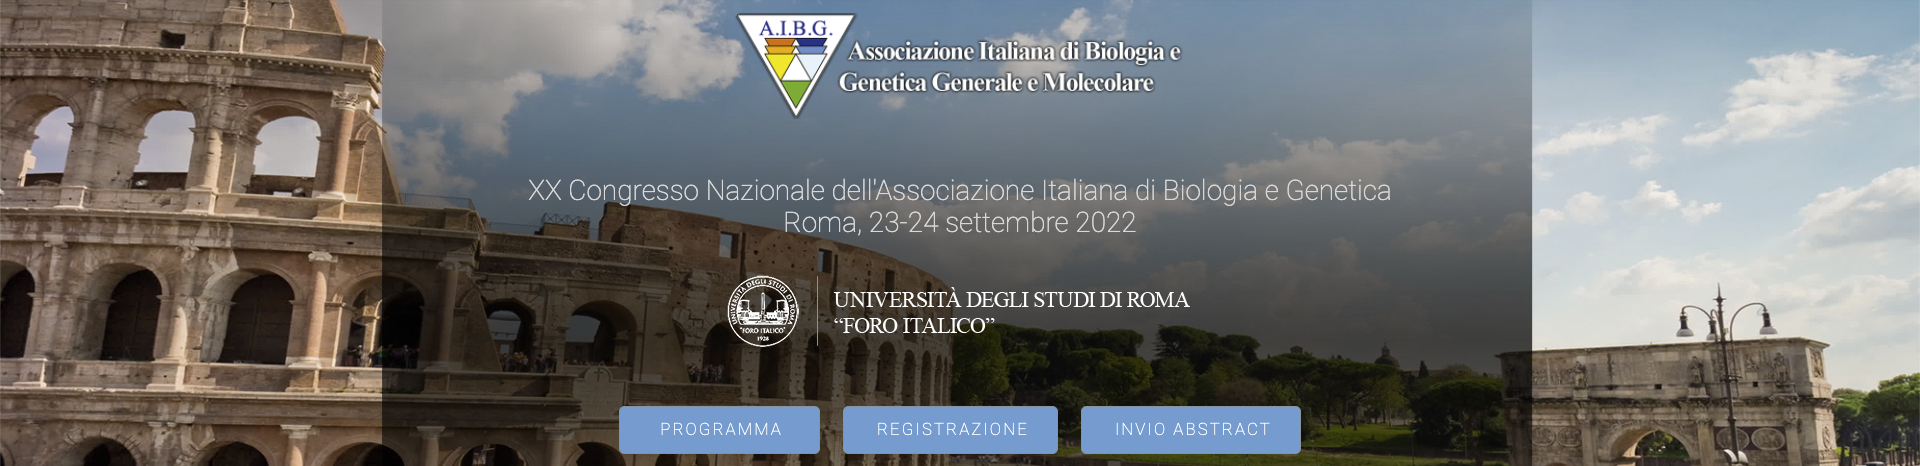 XX Congresso Nazionale dell’Associazione Italiana di Biologia e Genetica